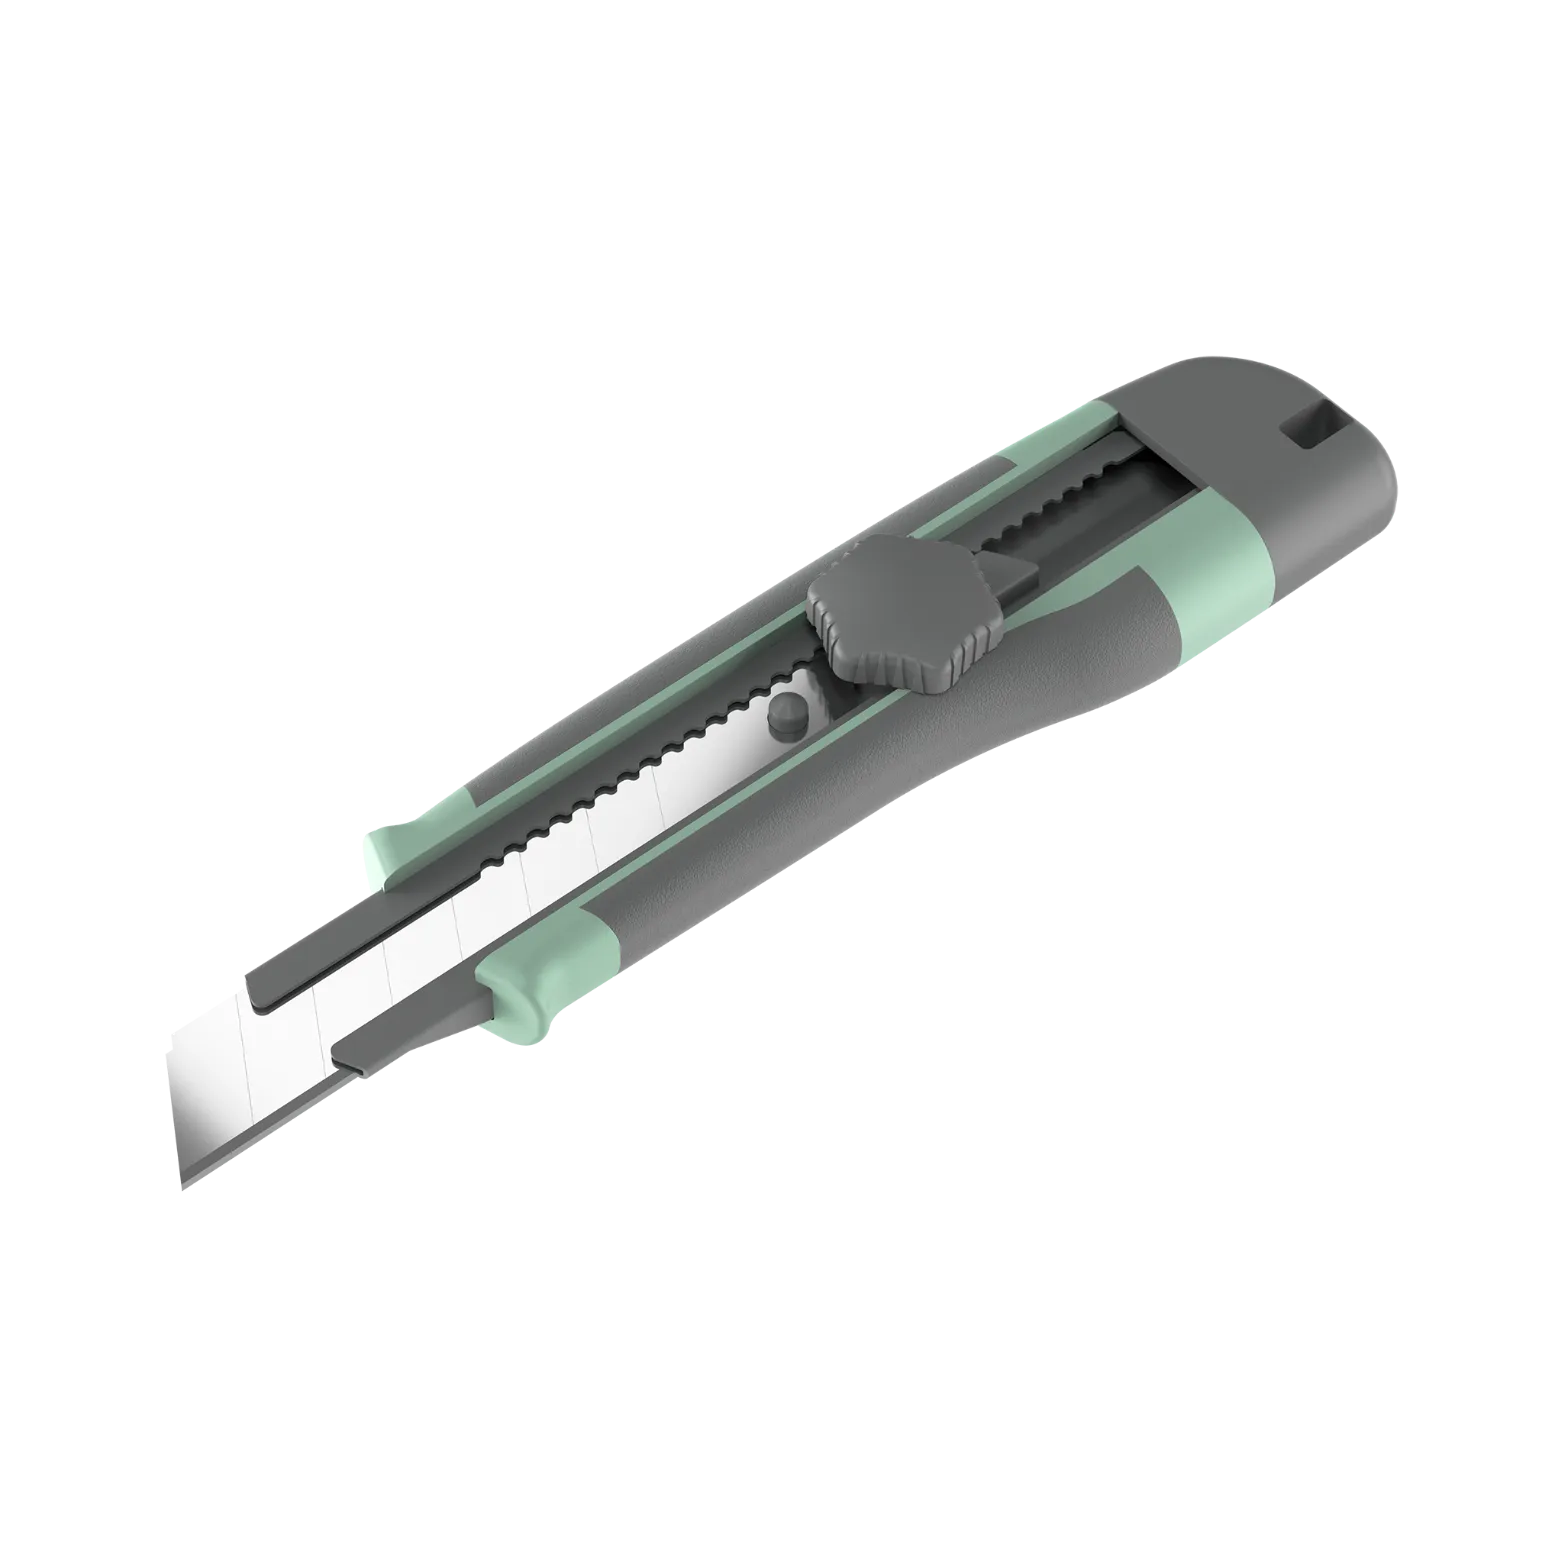 vmuk-09-utility-knife-3